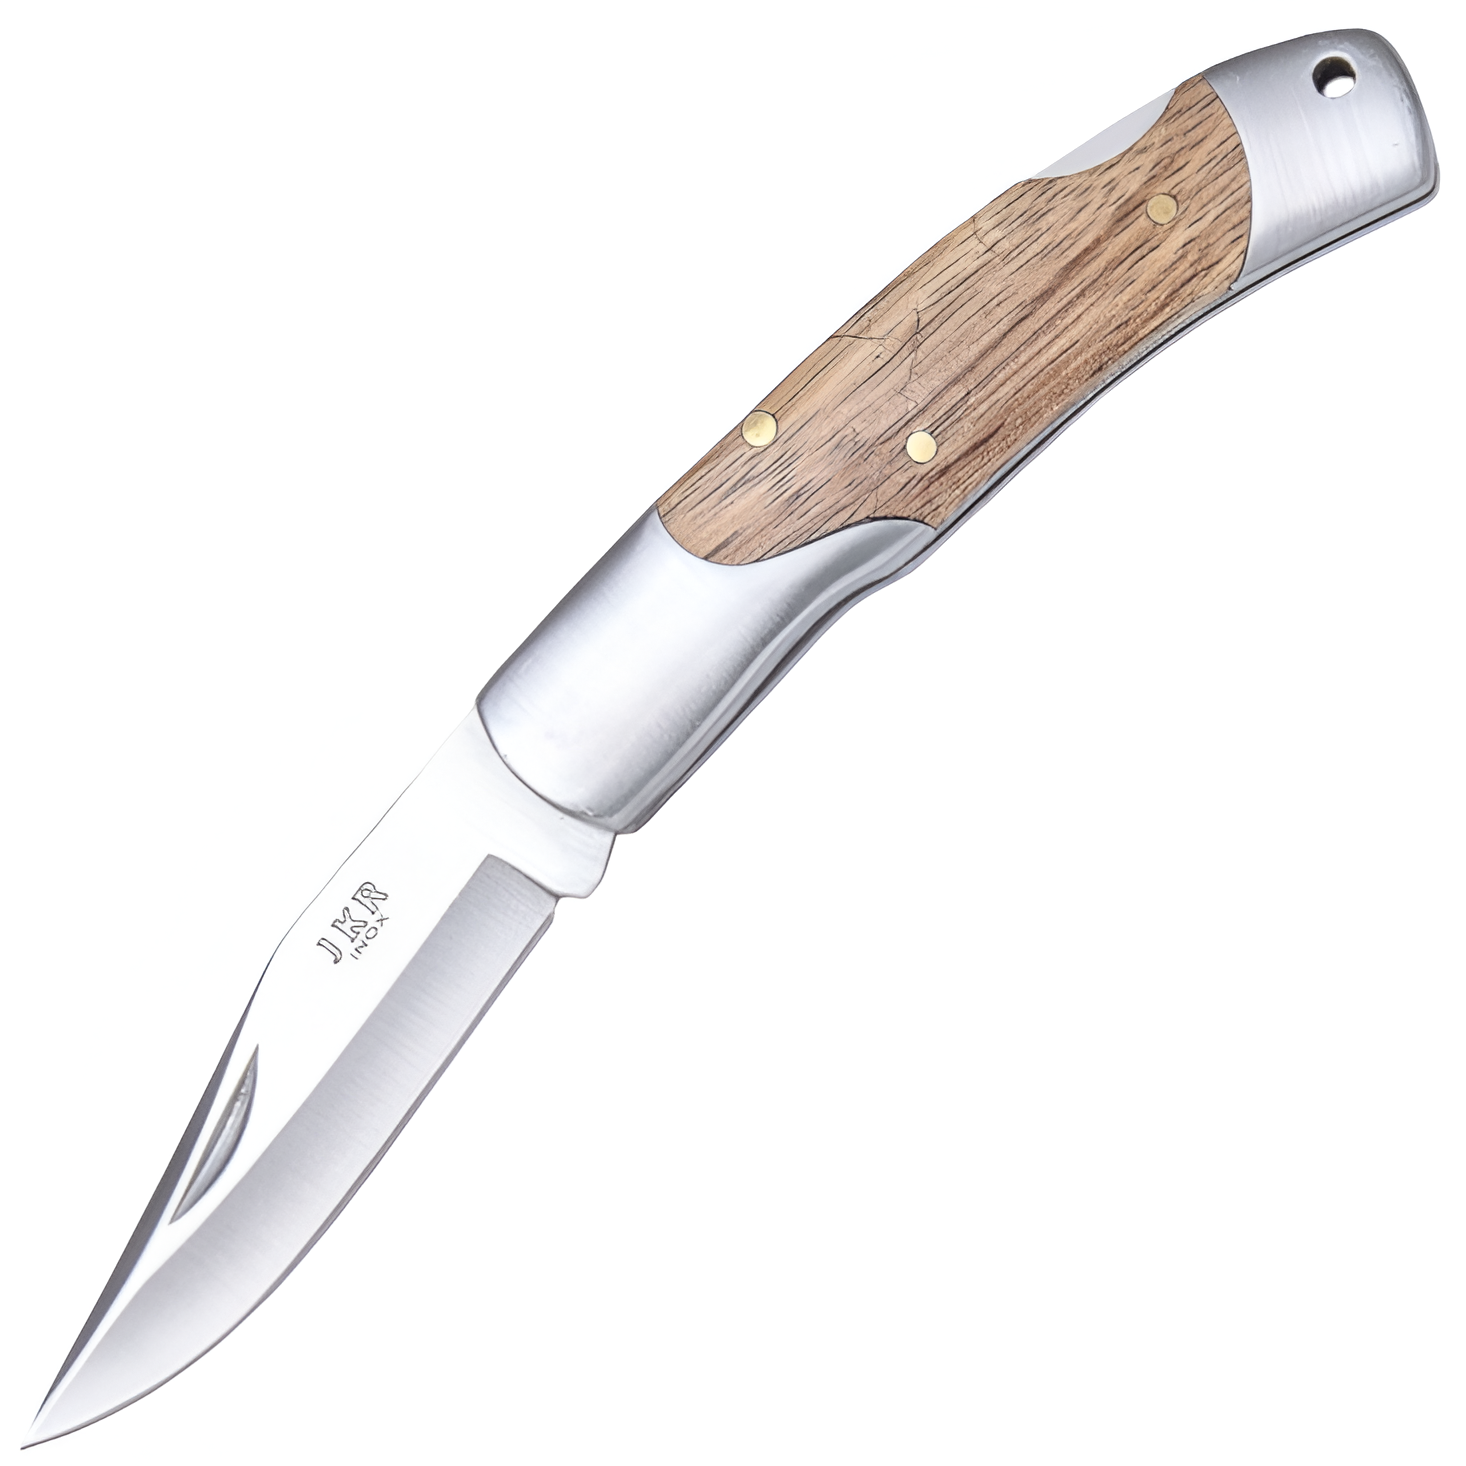 JKR Zavírací nůž, 6,5 cm, dřevo. Kvalitní nůž s čepelí z oceli 3Cr13MoV a vnější pojistkou. Ideální pro každodenní nošení v kapse nebo na klíčích. Konstrukčně jednoduchý nůž s dřevěnou rukojetí.